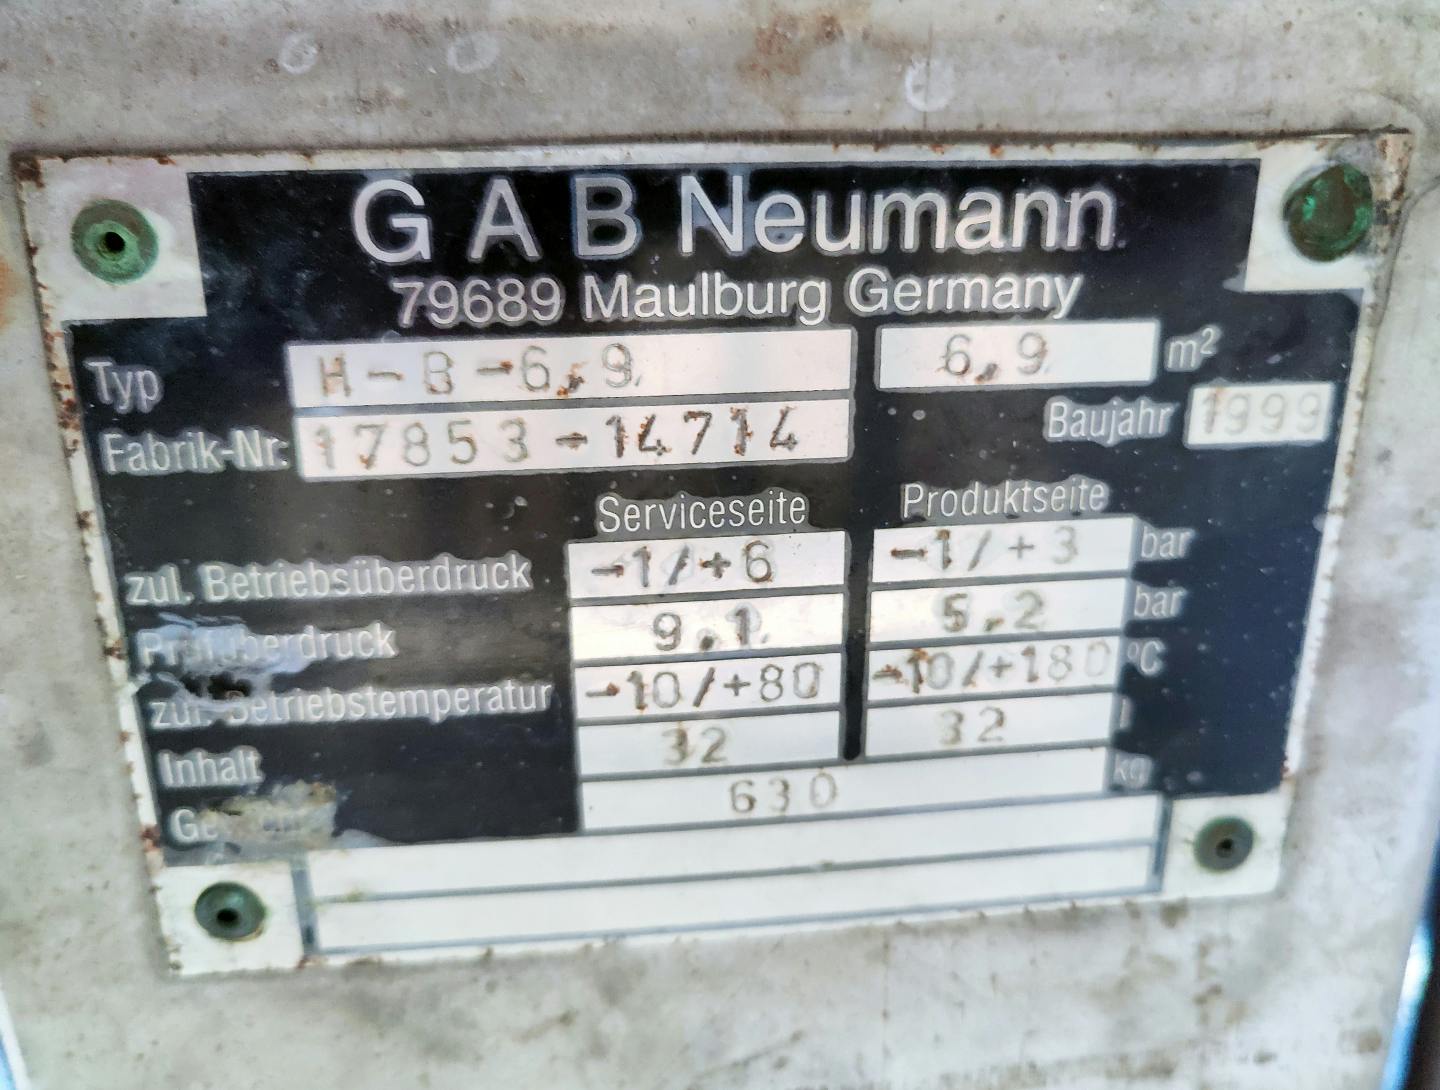 Gab Neumann H-B- 6,9 - Échangeur de température tubulaire - image 7